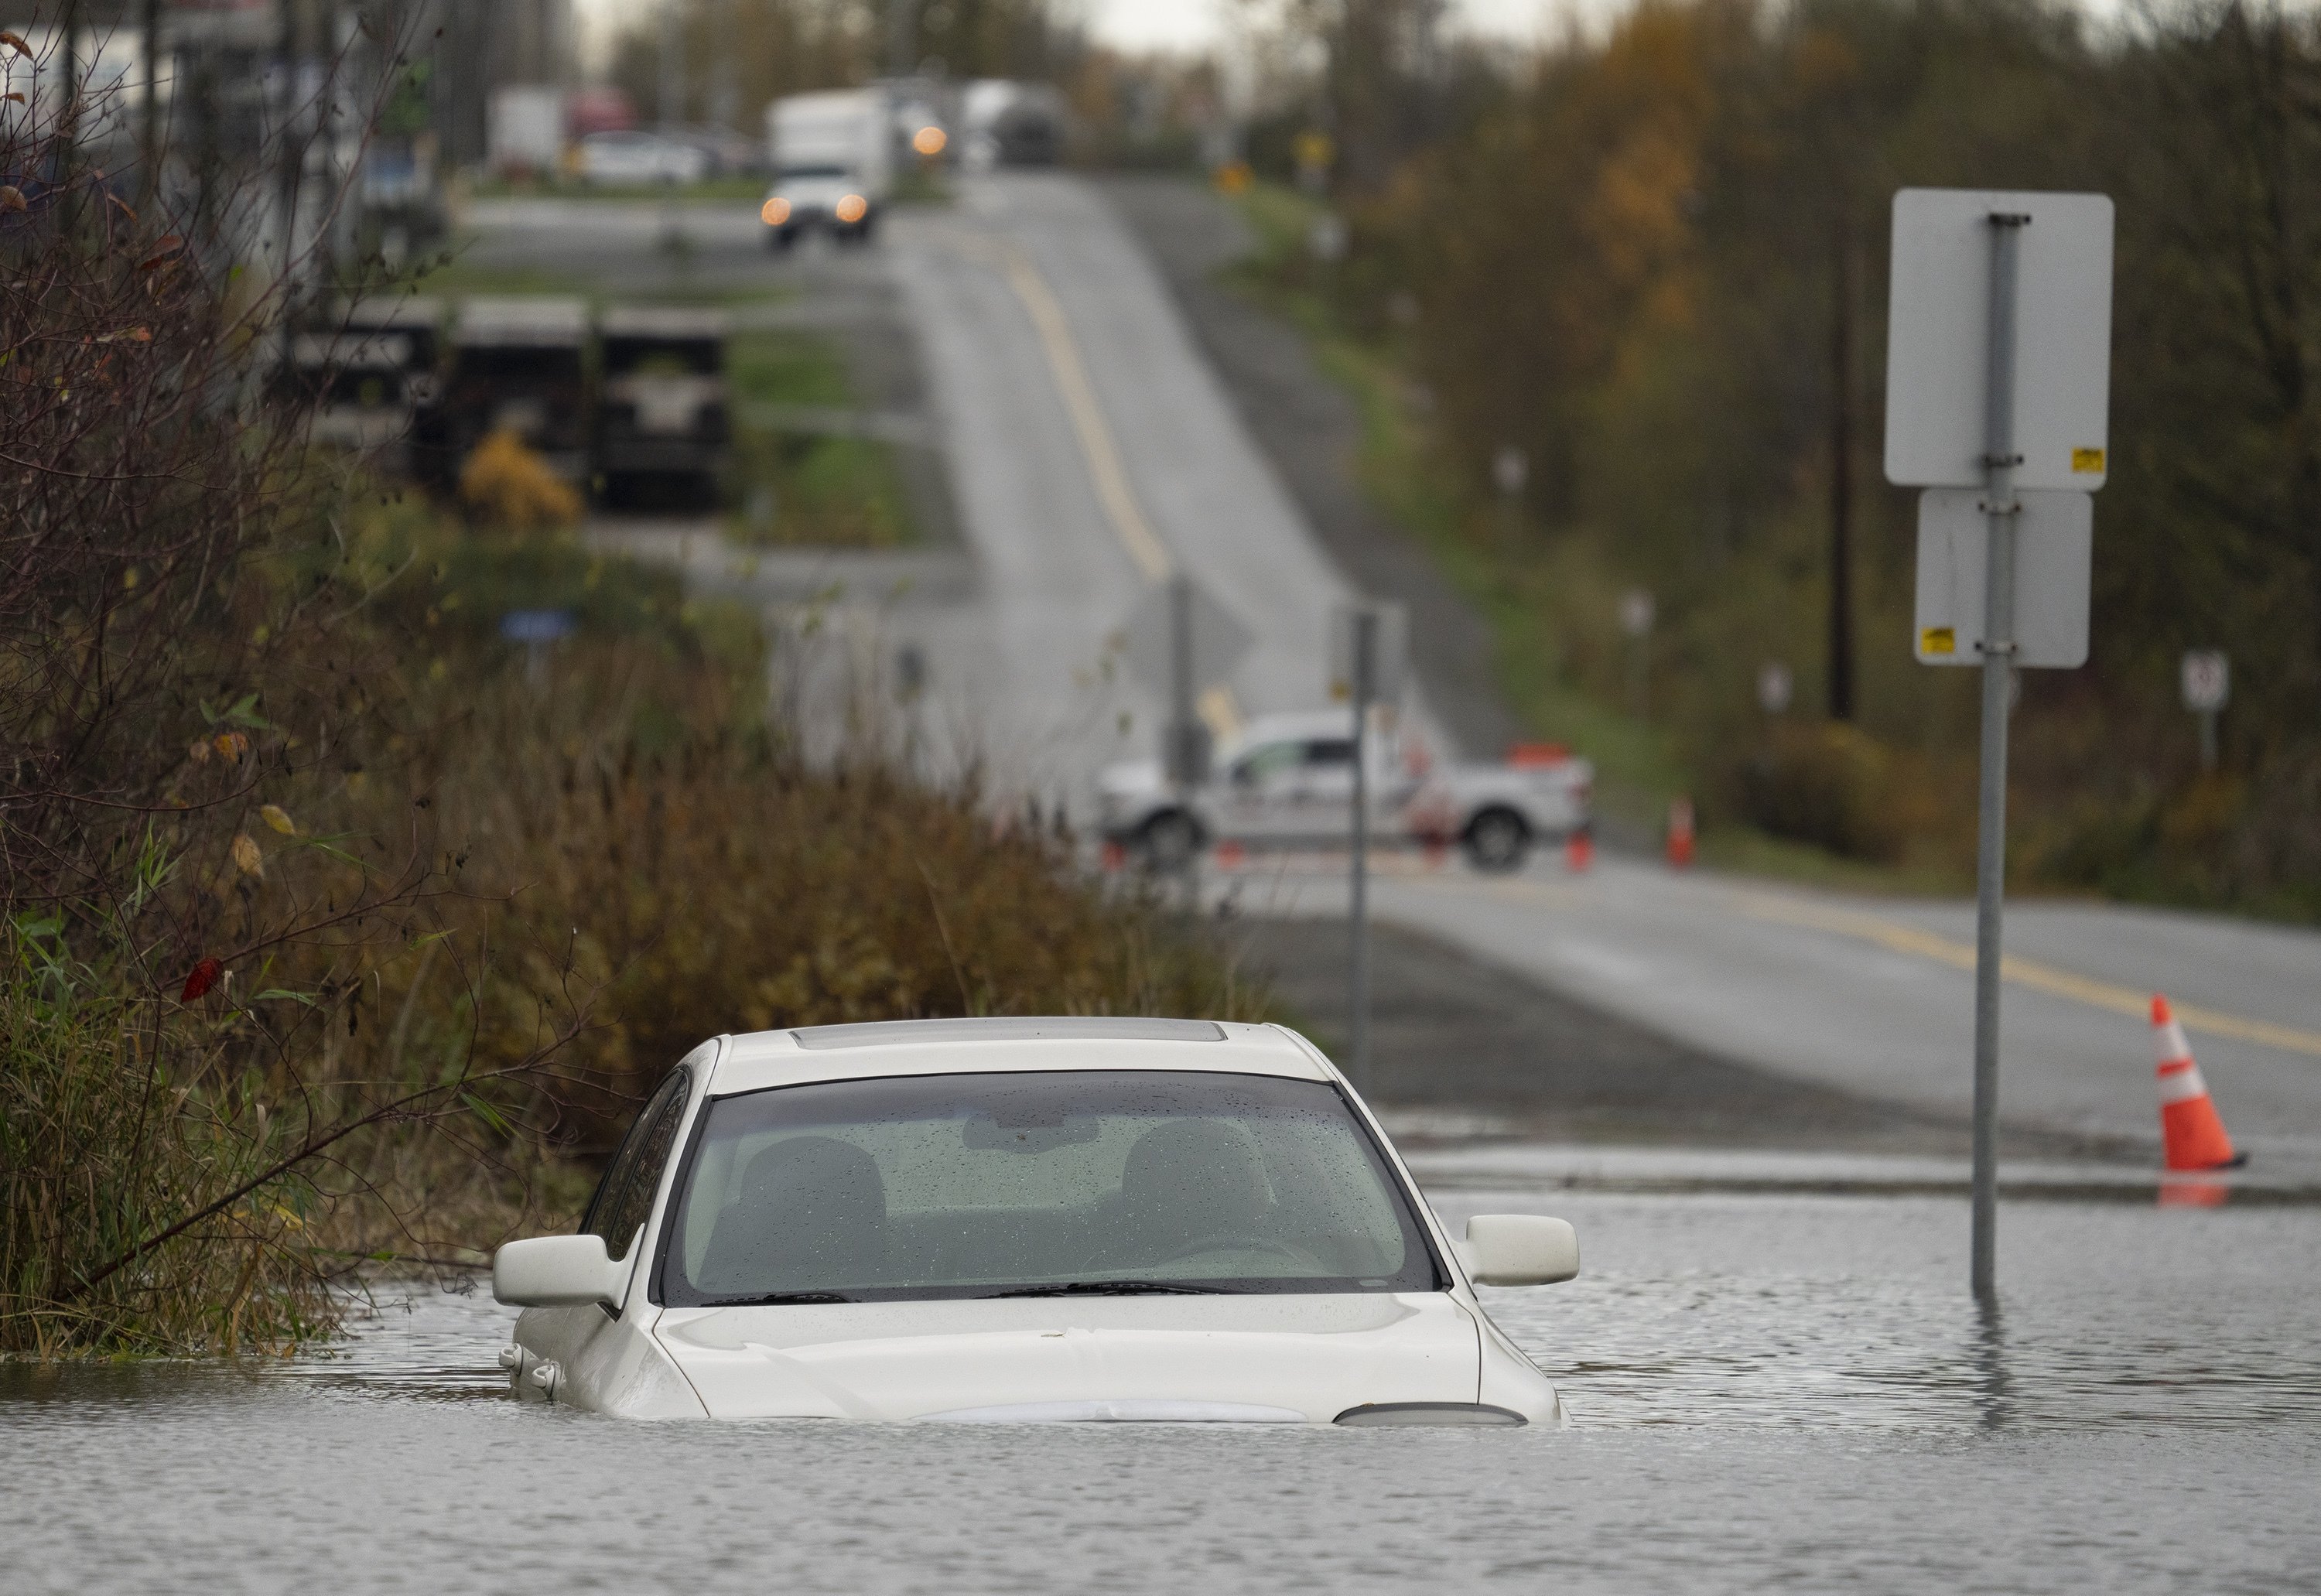 Sebuah kendaraan terendam banjir di sepanjang jalan di Abbotsford, British Columbia, Senin, 15 November 2021. (Jonathan Hayward/The Canadian Press via AP)